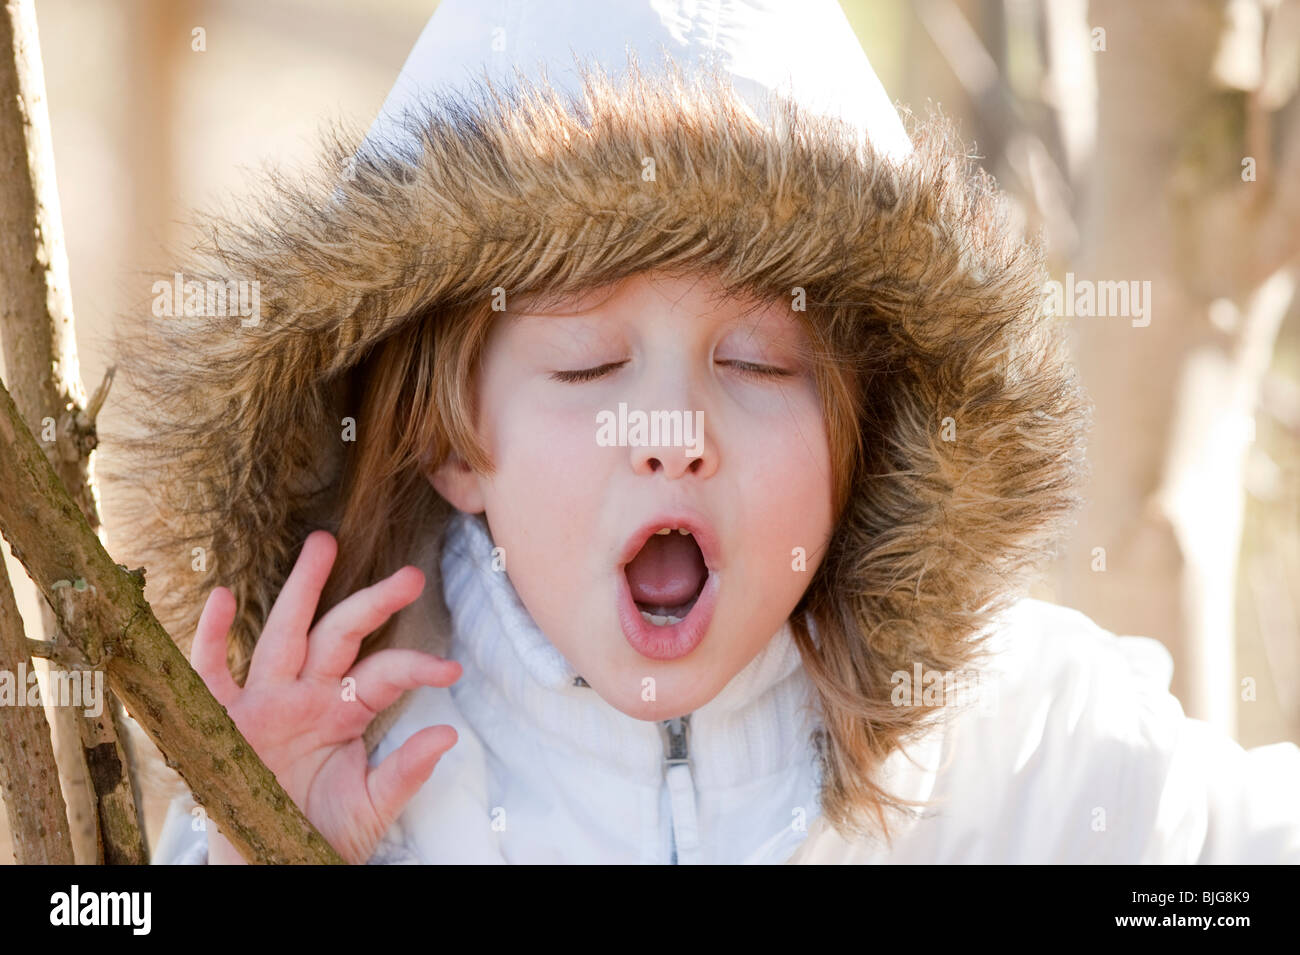 7 ans, fille en manteau d'hiver avec capuche de bâiller. Modèle entièrement libéré Banque D'Images